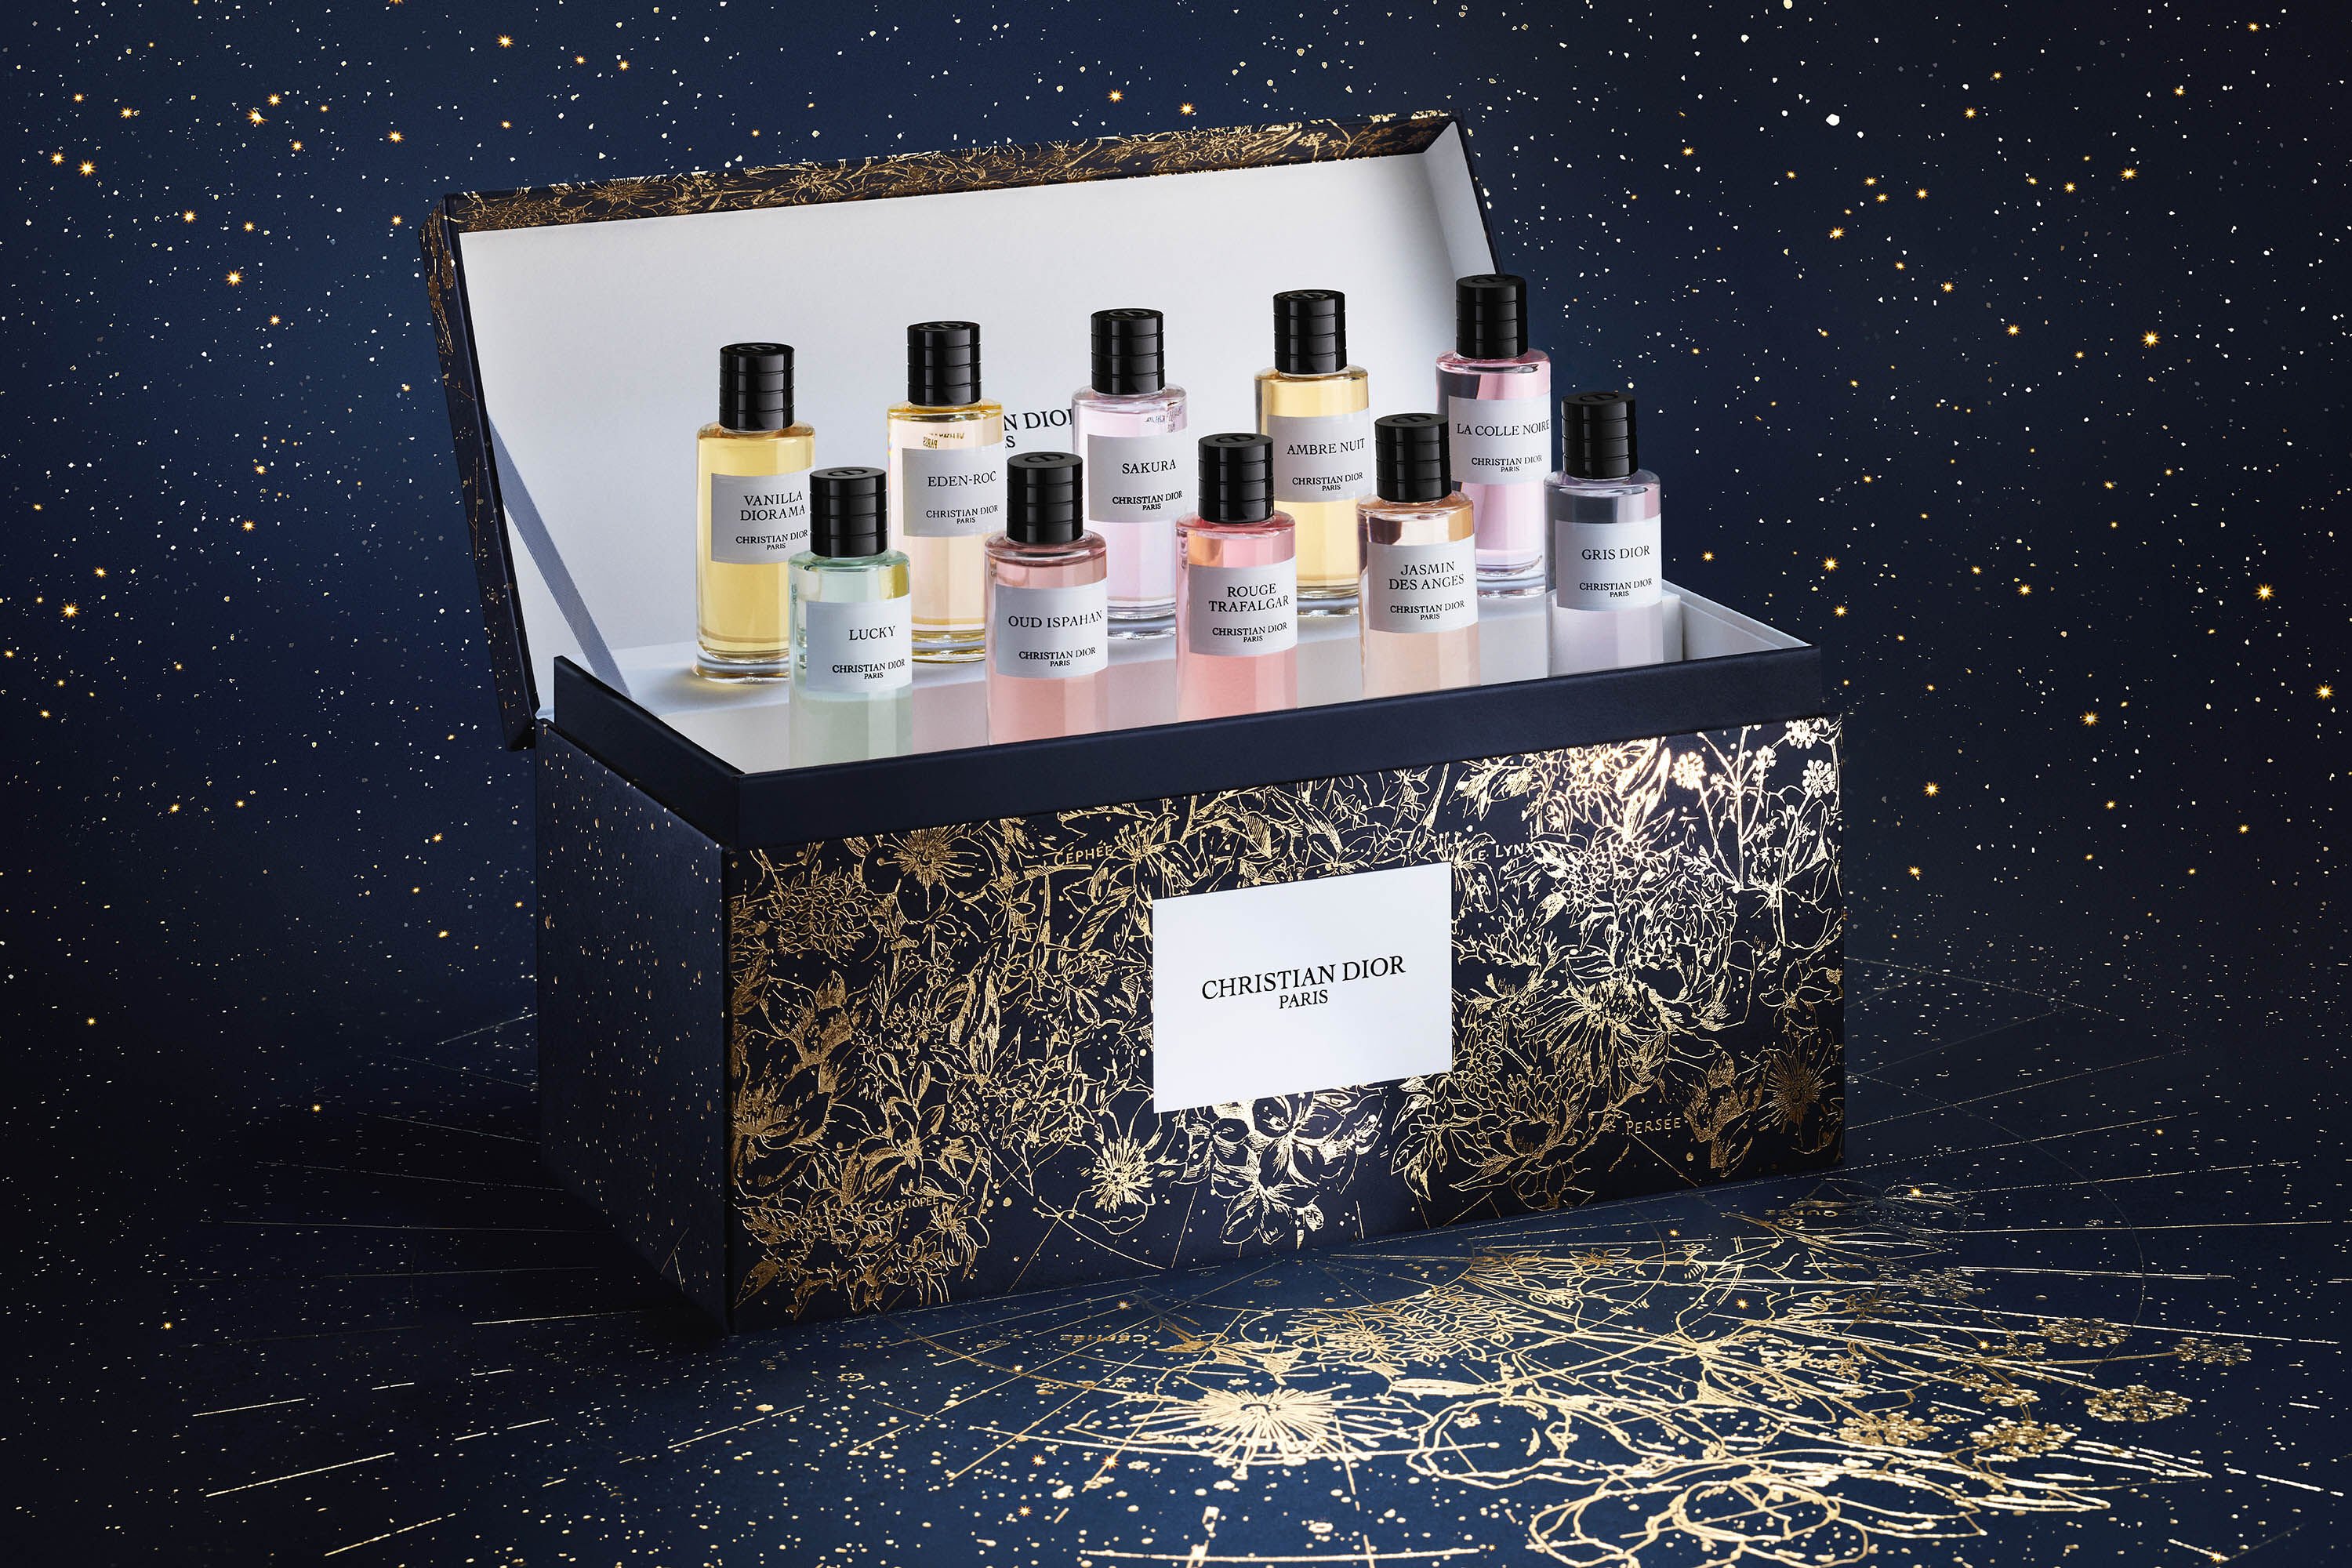 Les Parfums De Paris Miniature Perfume Bottles in Box